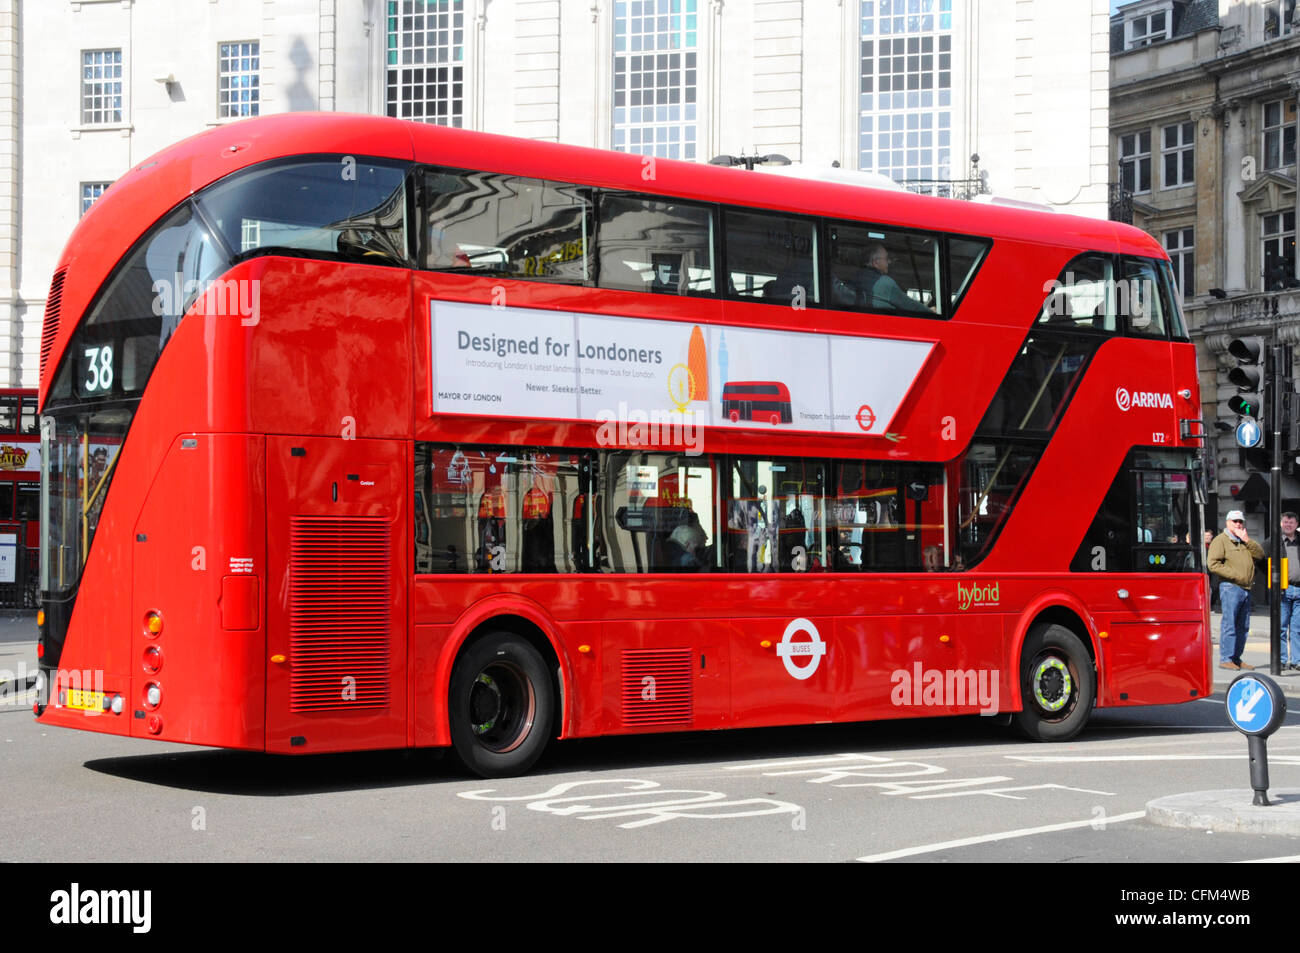 New London Red 2012 bus de transport public à impériale à deux étages appelé Routemaster ou Boris bus Piccadilly Circus England UK Banque D'Images